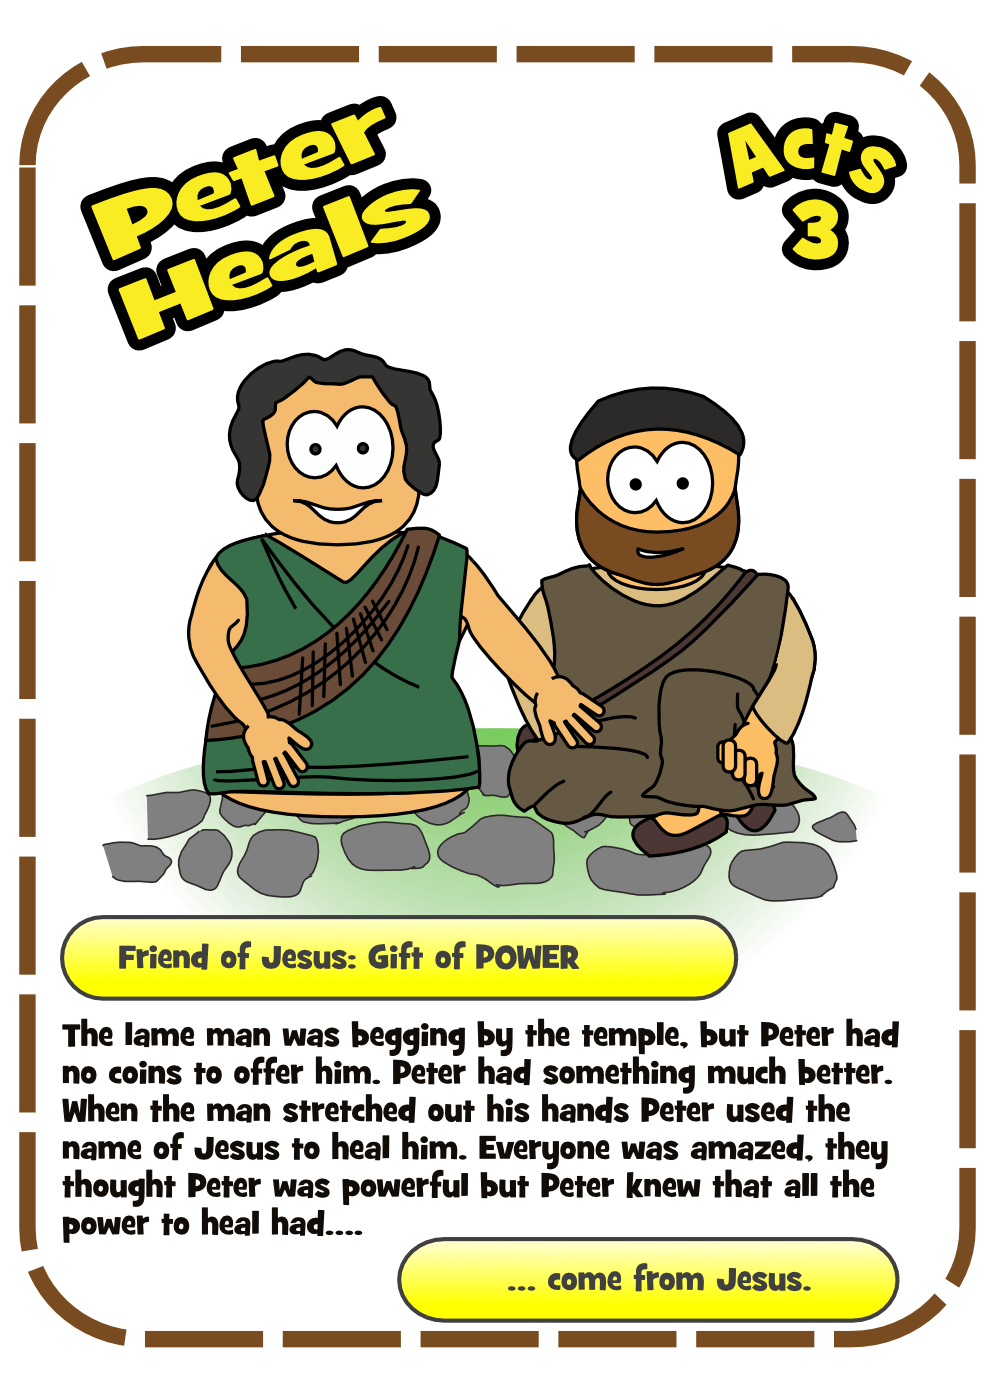 119-Peter-Heals-Card